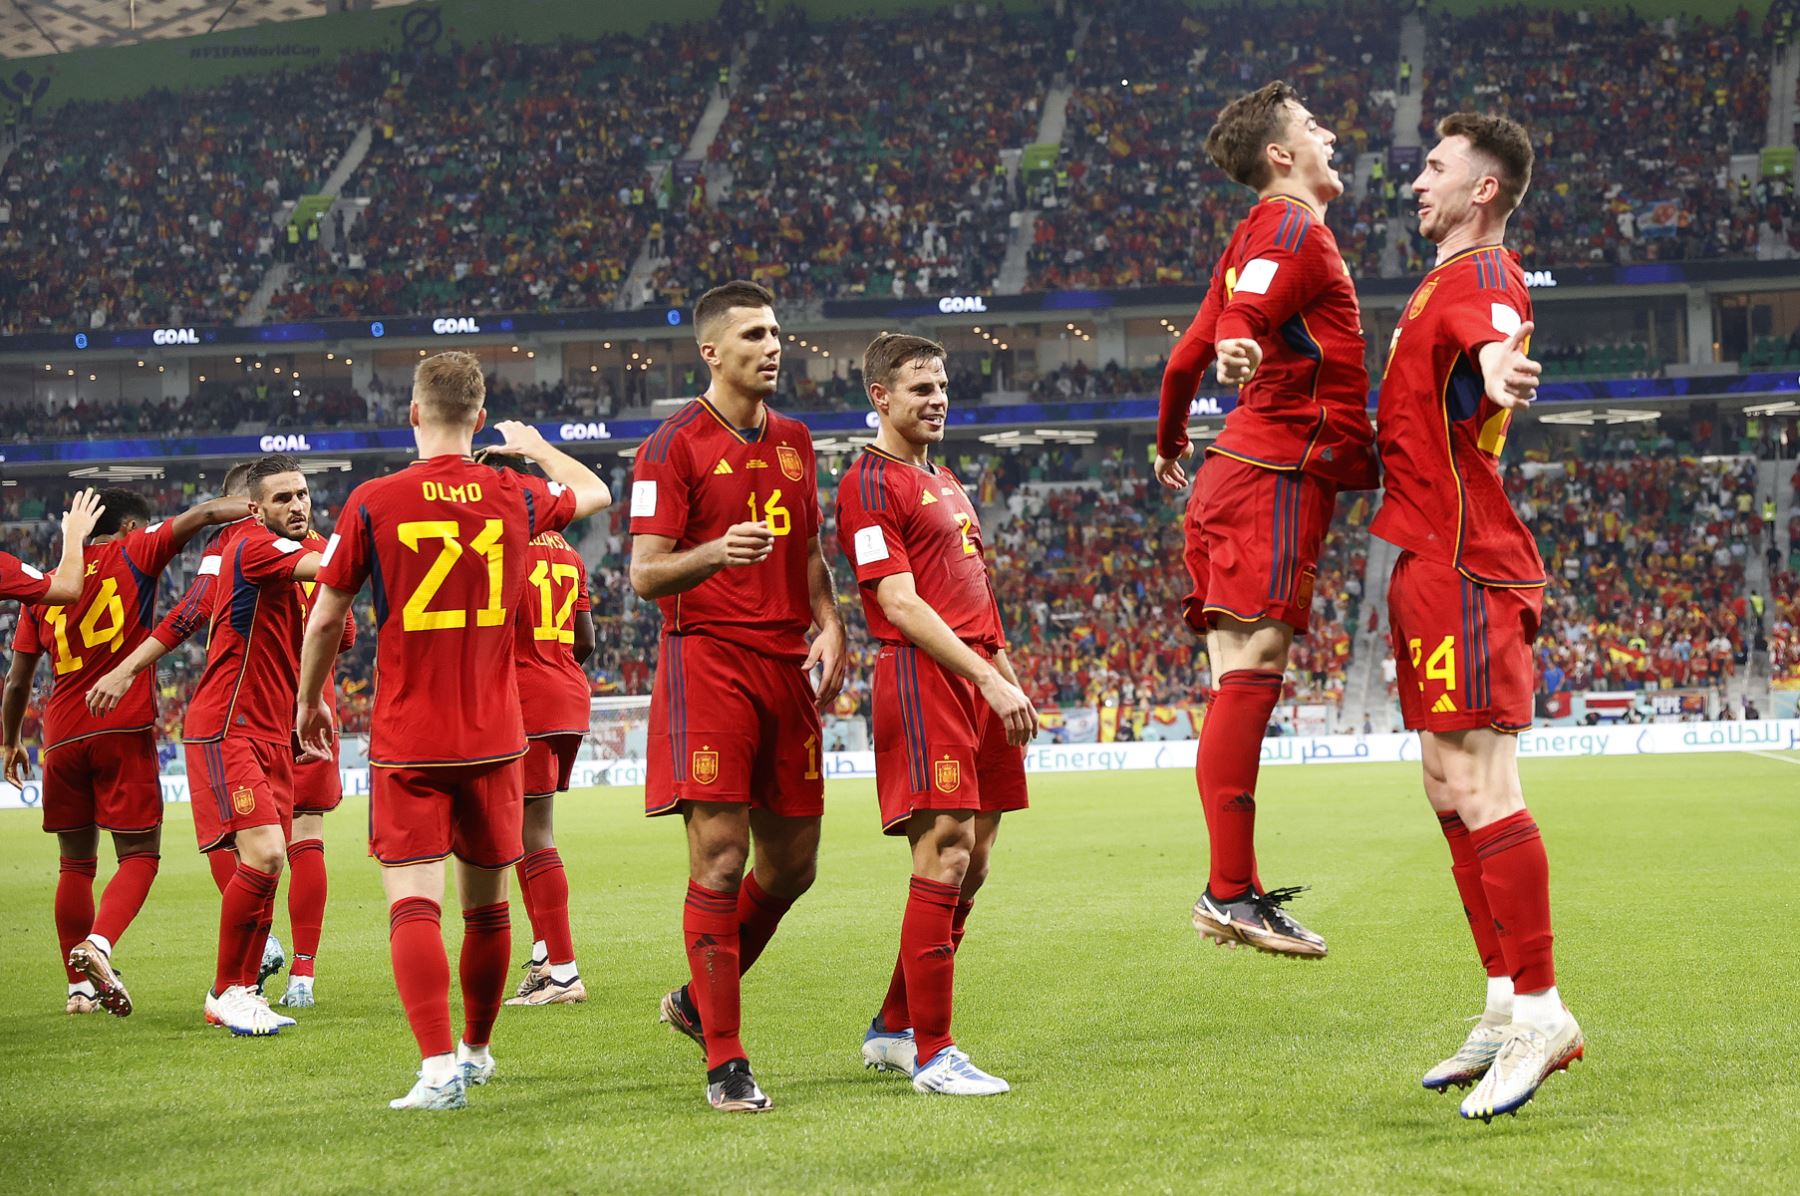 Jugadores de España celebran un gol hoy, en un partido de la fase de grupos del Mundial de Fútbol Qatar 2022 entre España y Costa Rica en el estadio Al Zumama en Doha (Catar). EFE/José Méndez